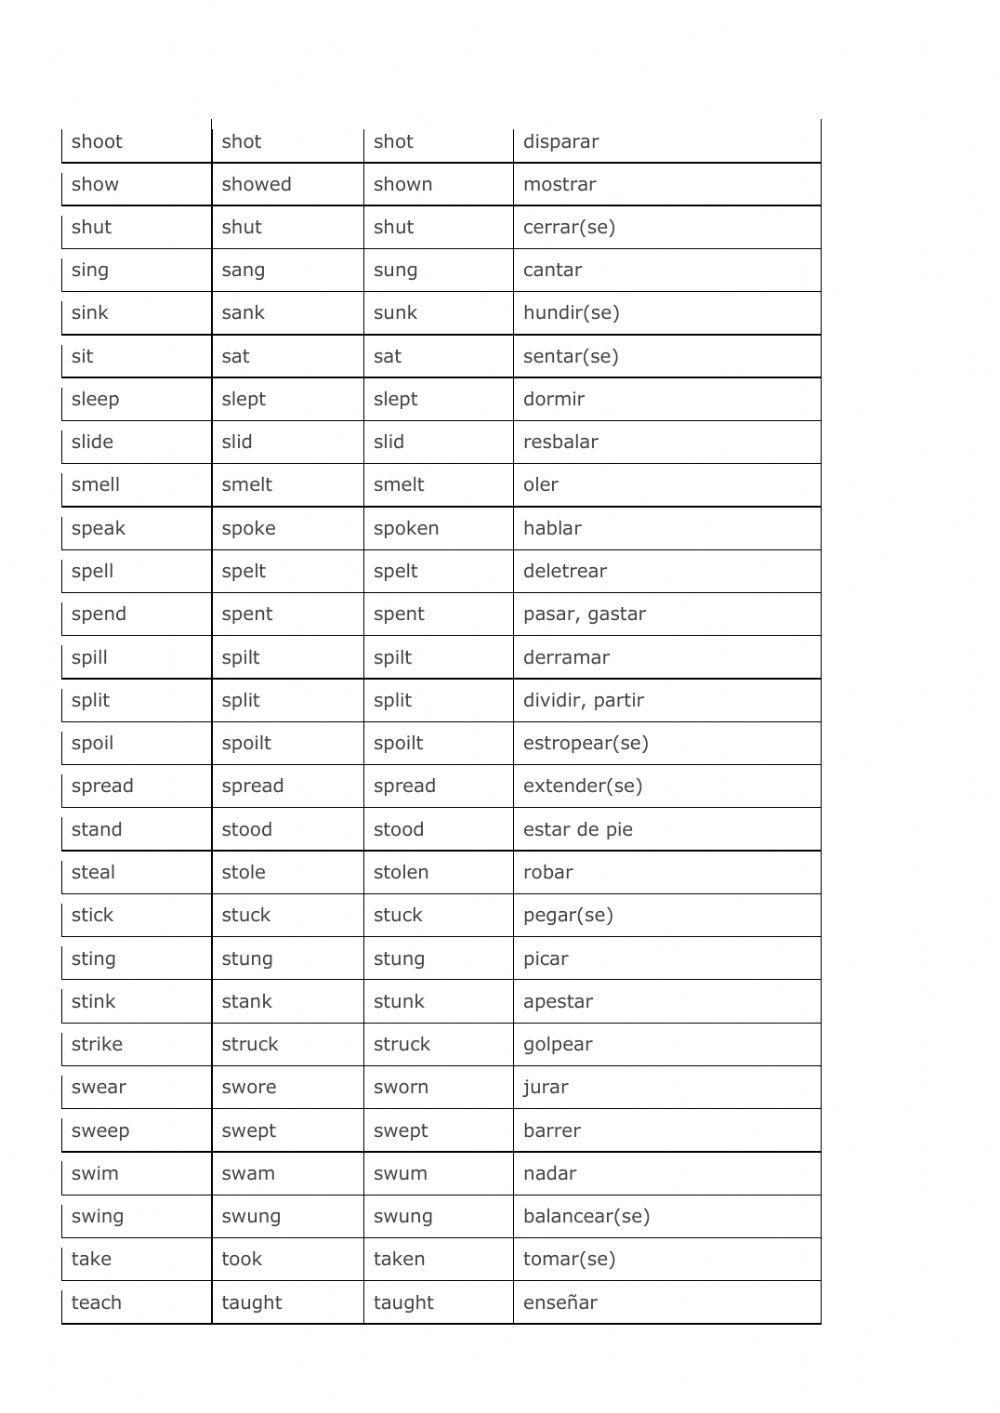 Irregular verbs list